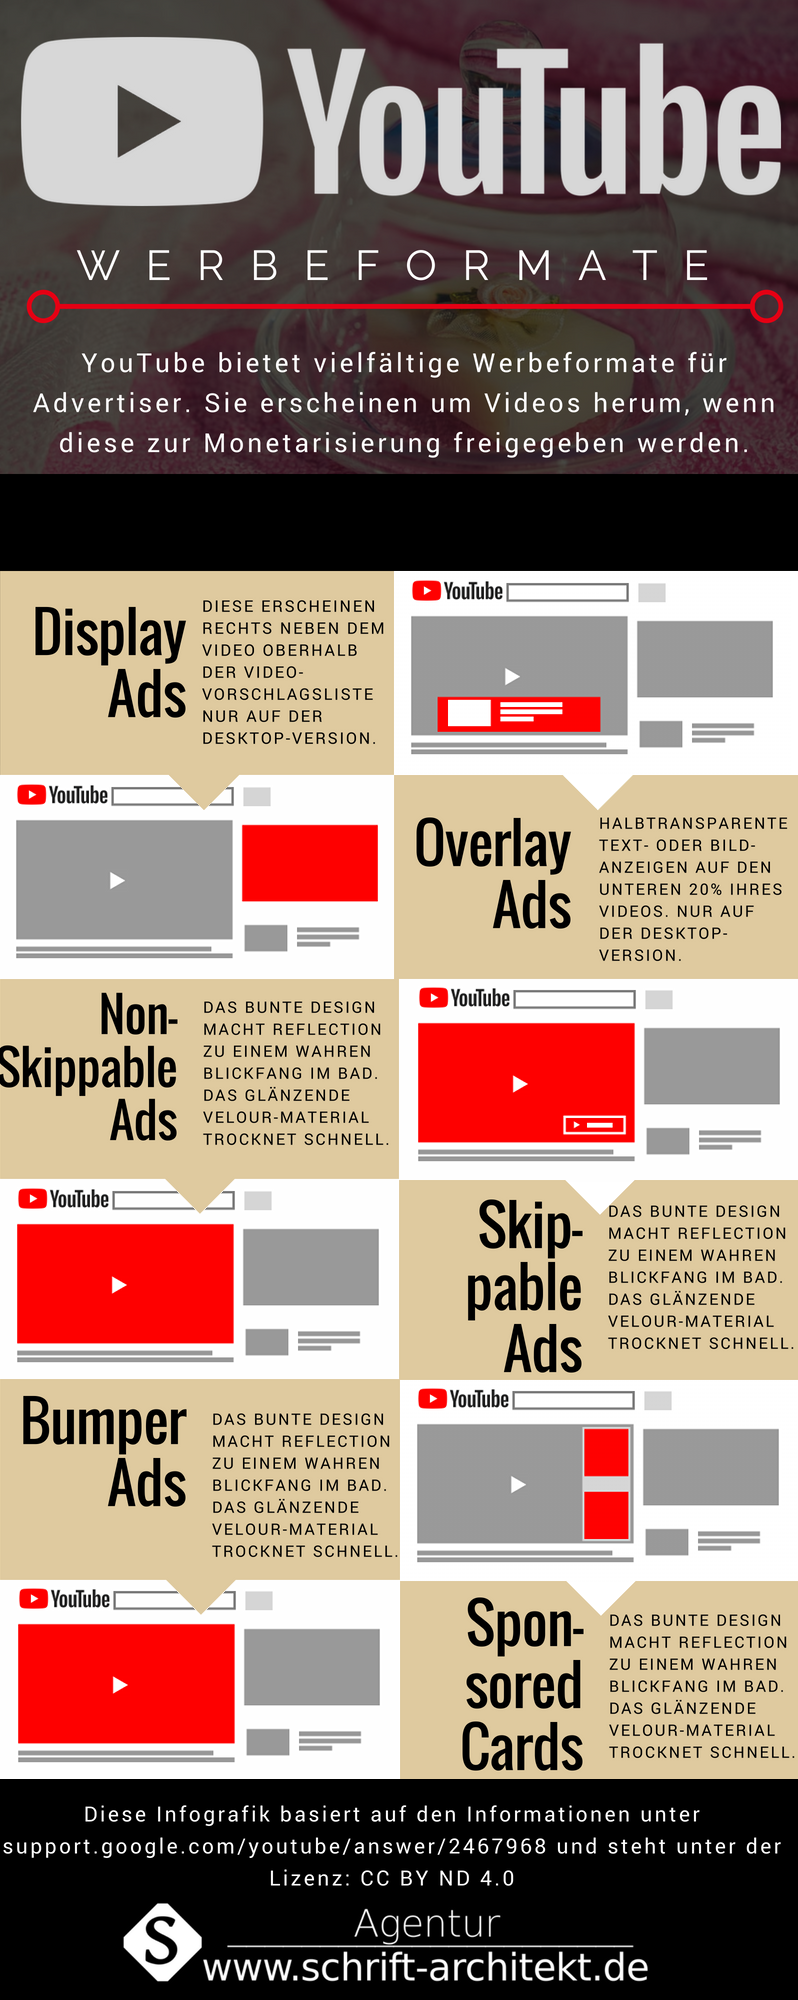 Infografik-zu-YouTube-Werbeformaten